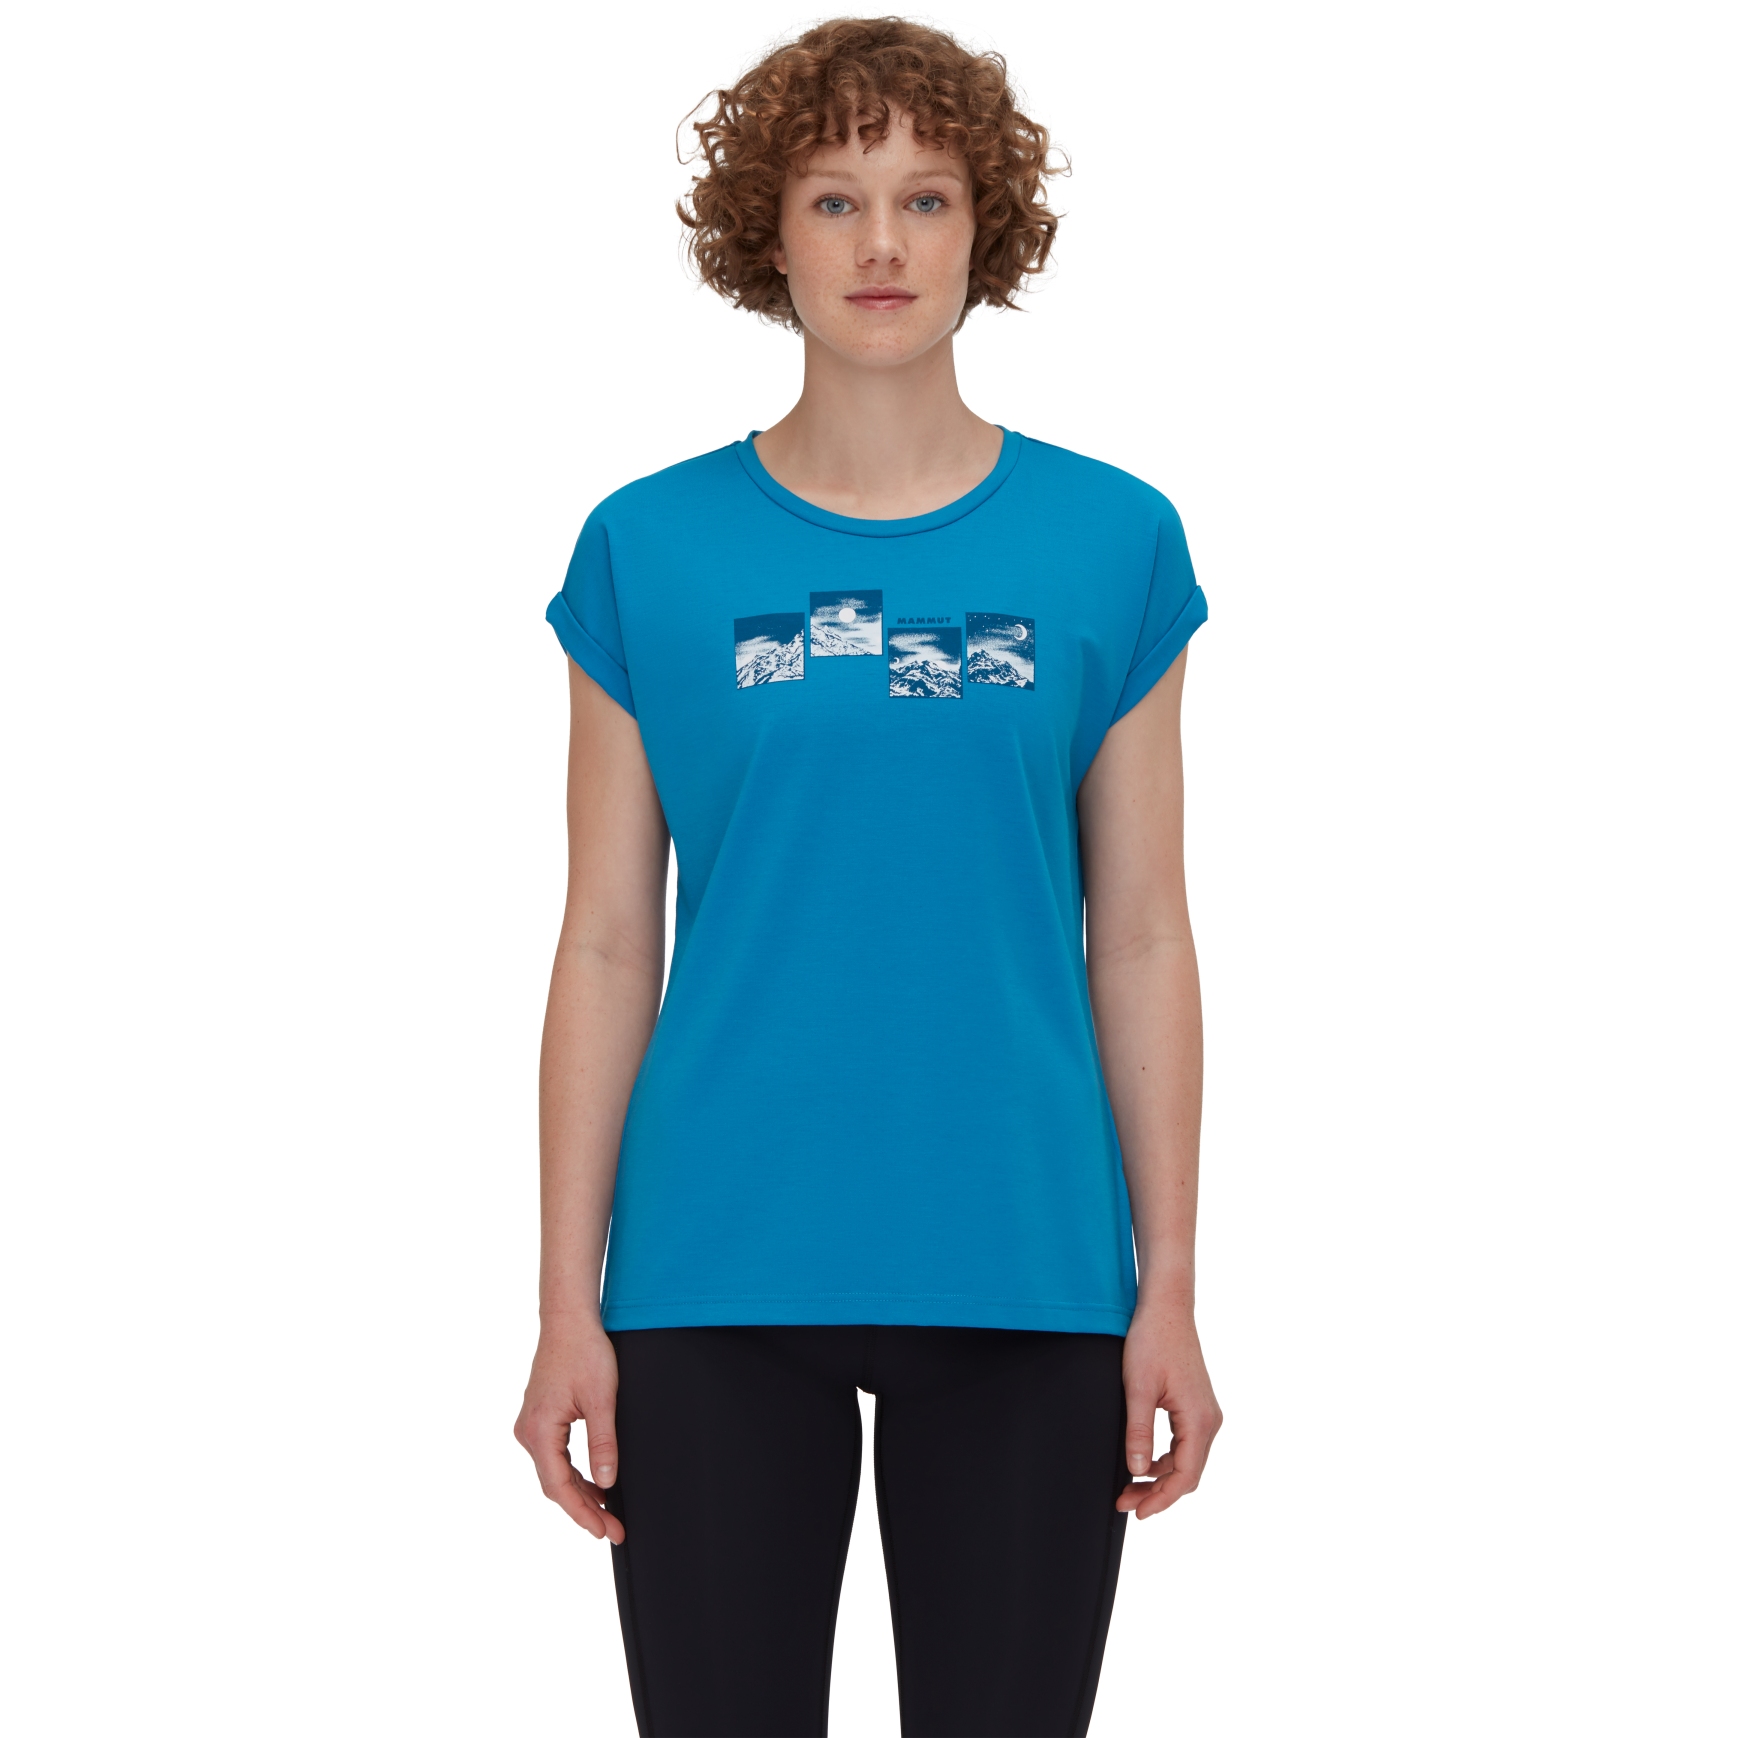 Produktbild von Mammut Mountain Day and Night T-Shirt Damen - glacier blue